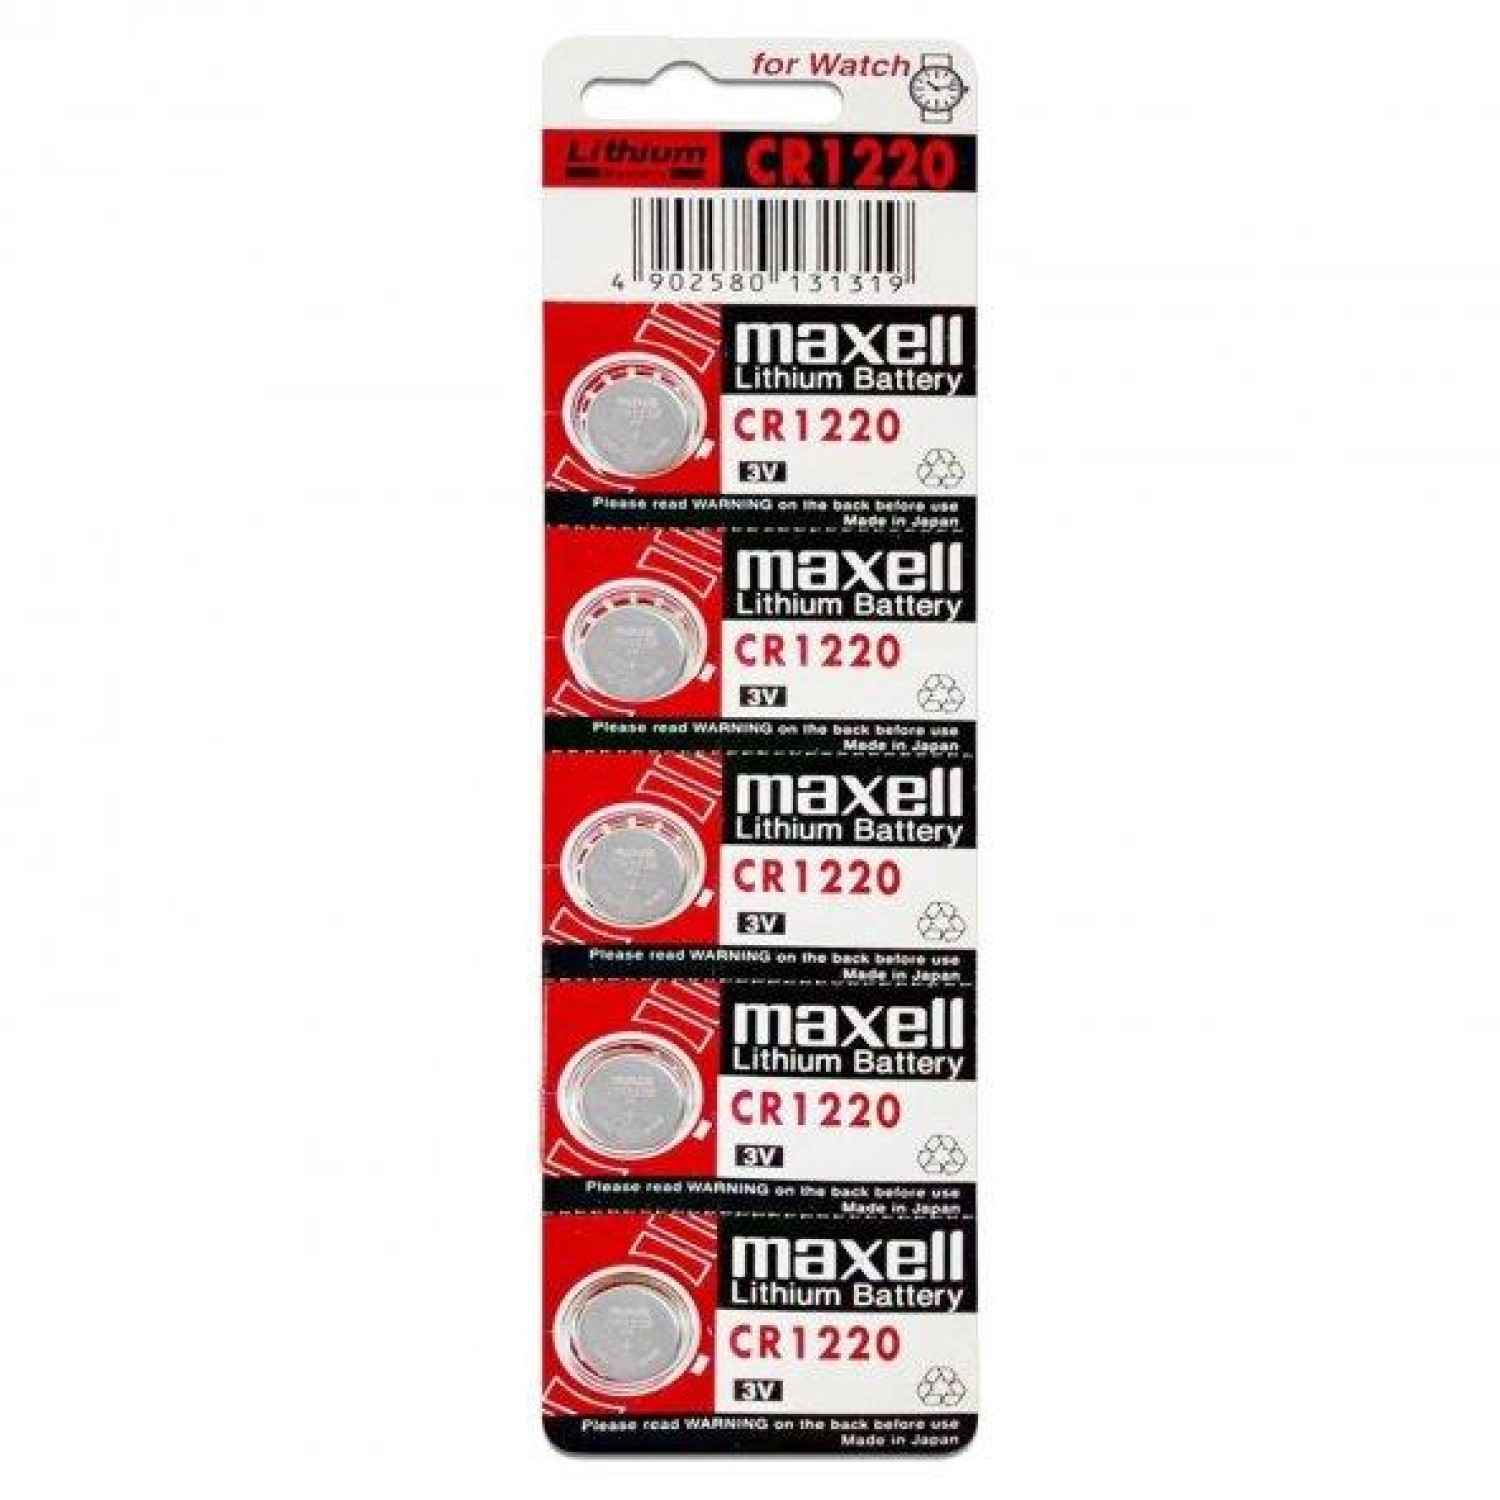 Maxell CR1220 3V Lityum Düğme Pil - 5'li